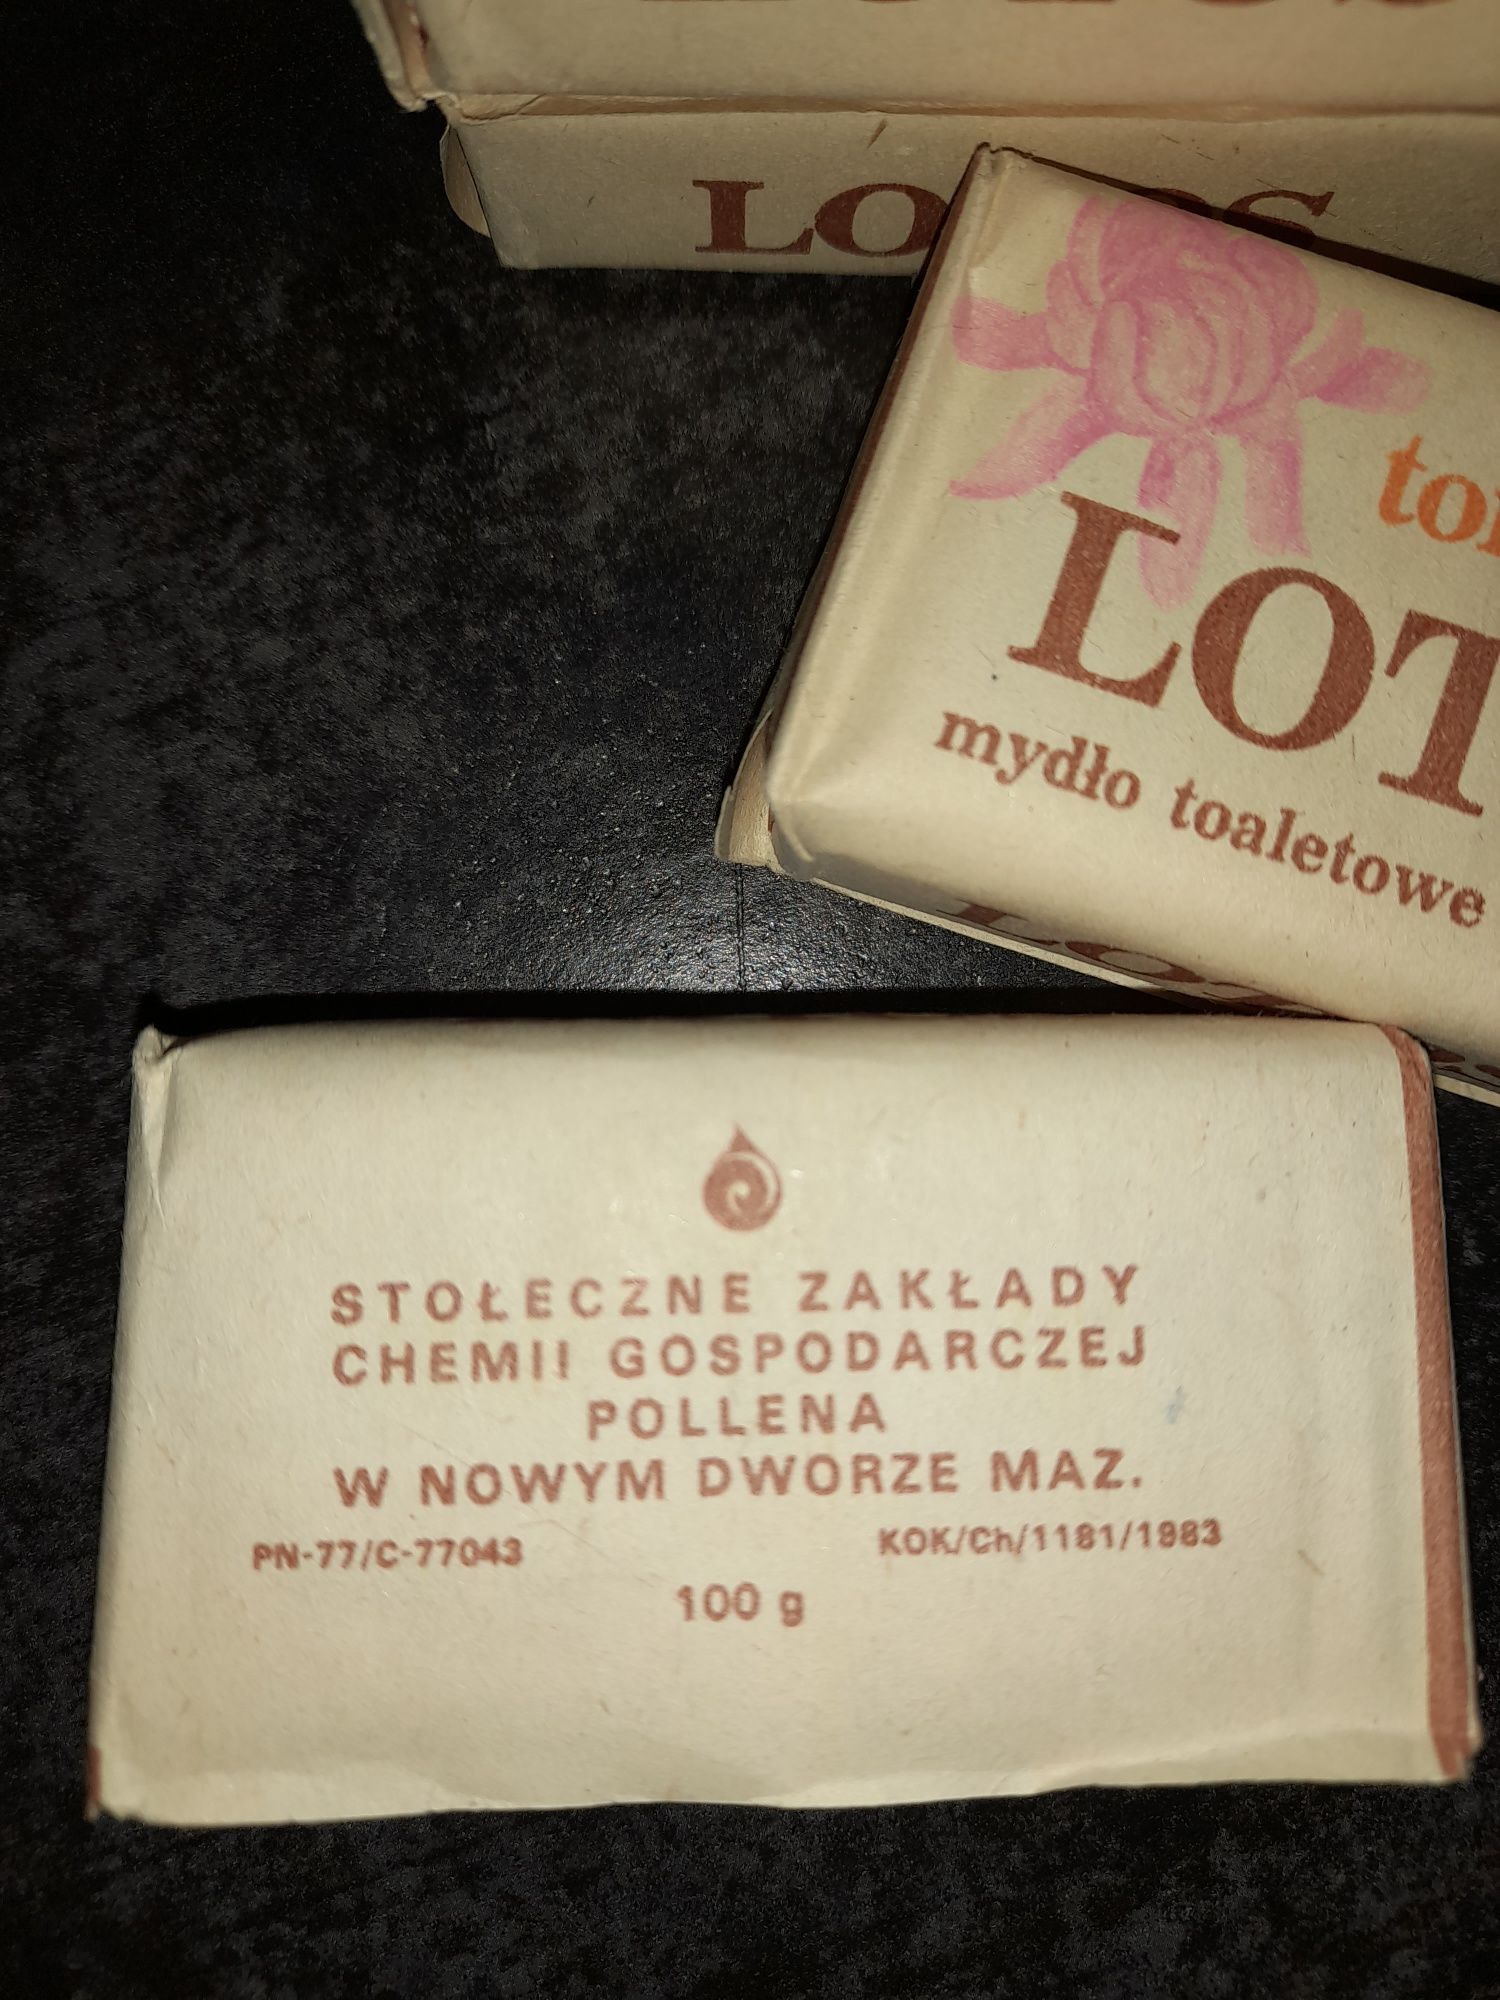 PRL mydło mydełka vintage kolekcja Lotos - Pollena